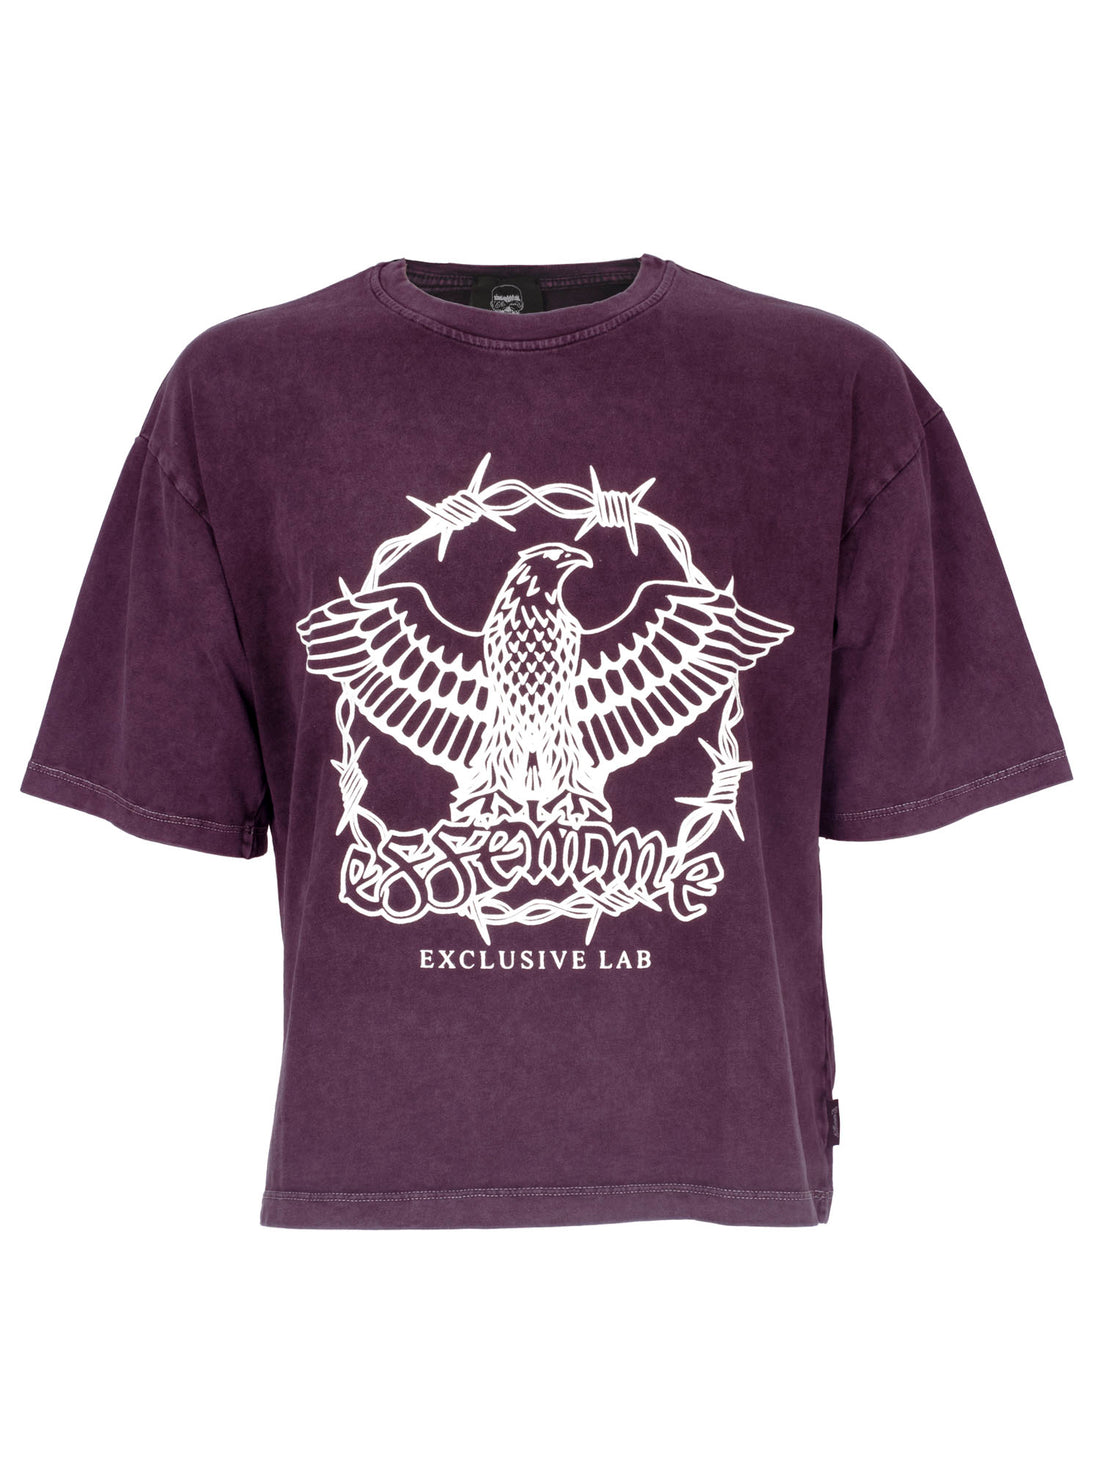 Tee Eagle Purple